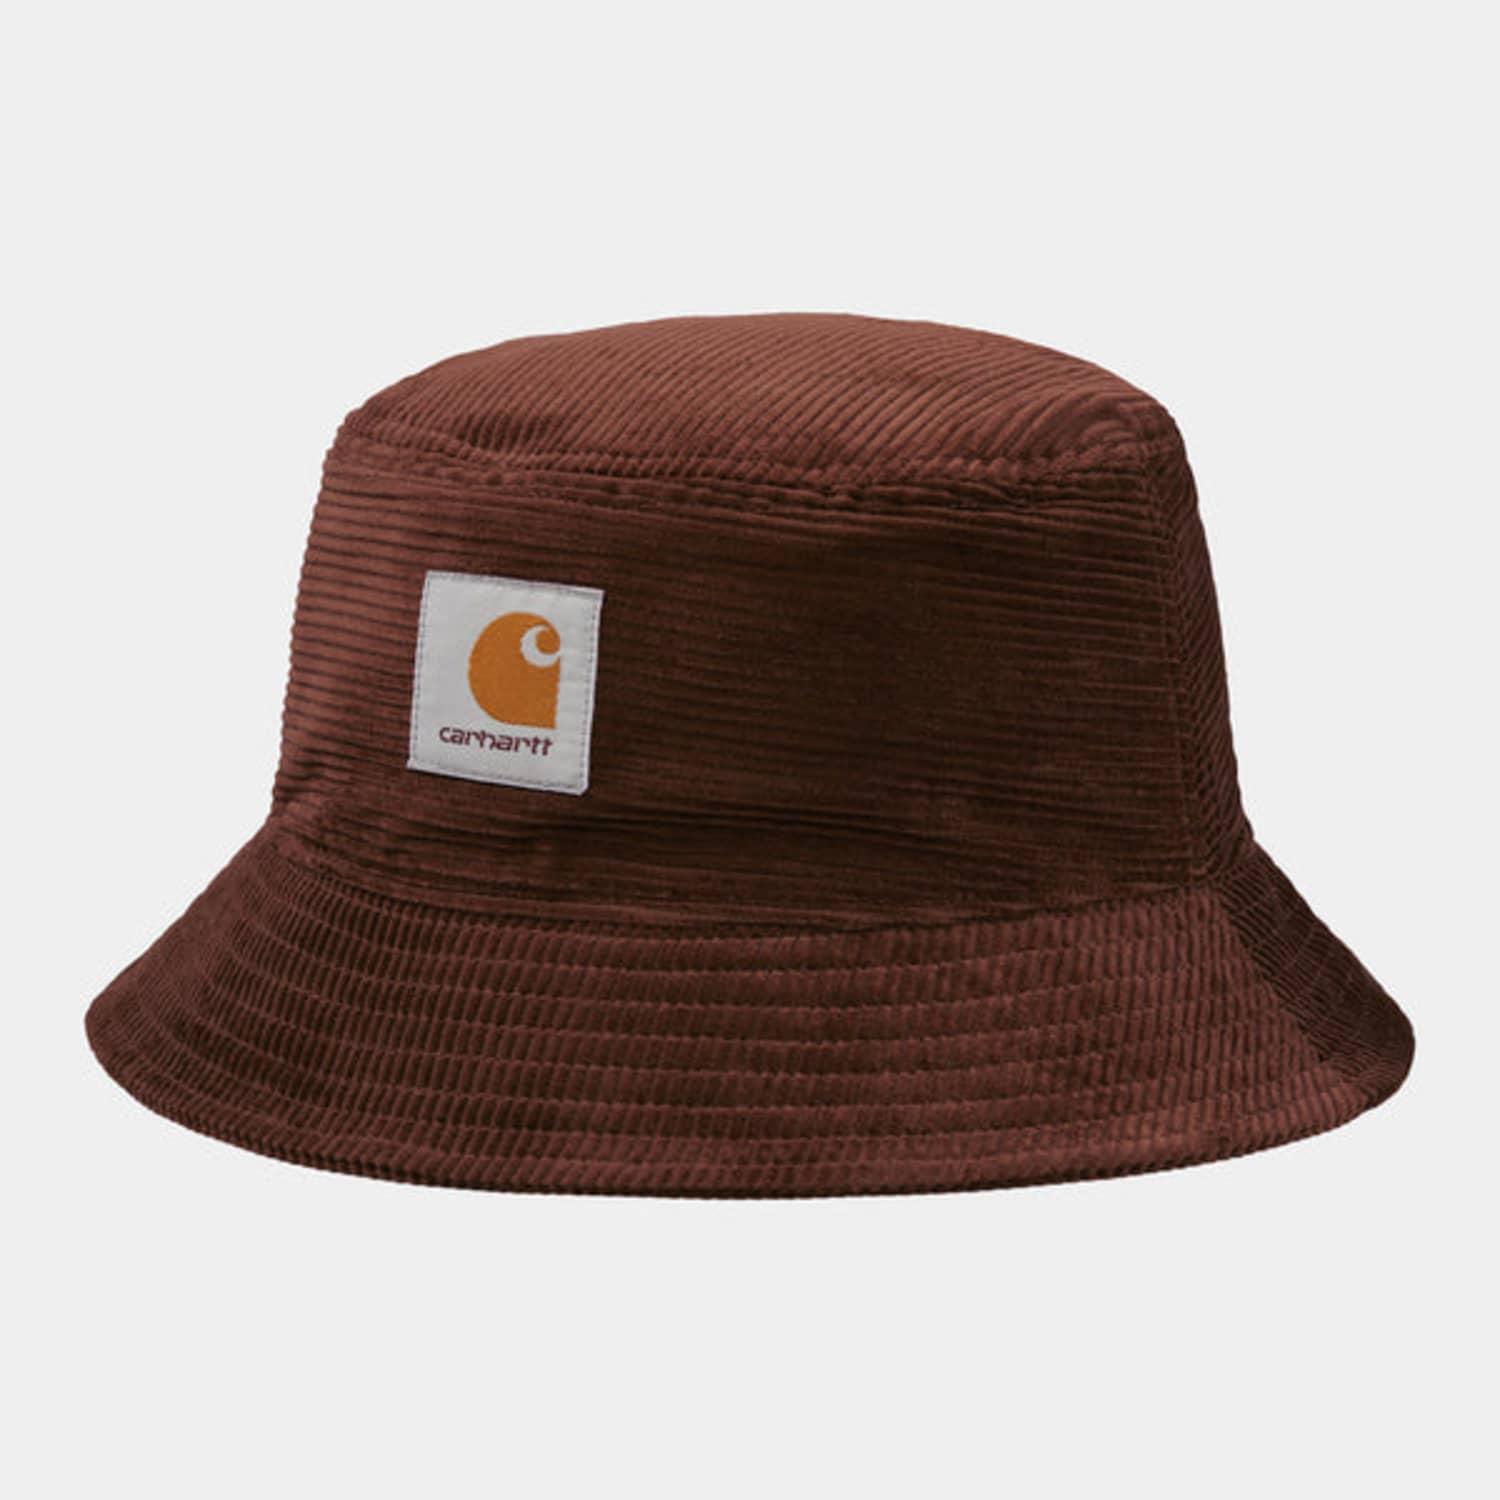 Carhartt Wip Cord Bucket Hat in Brown for Men